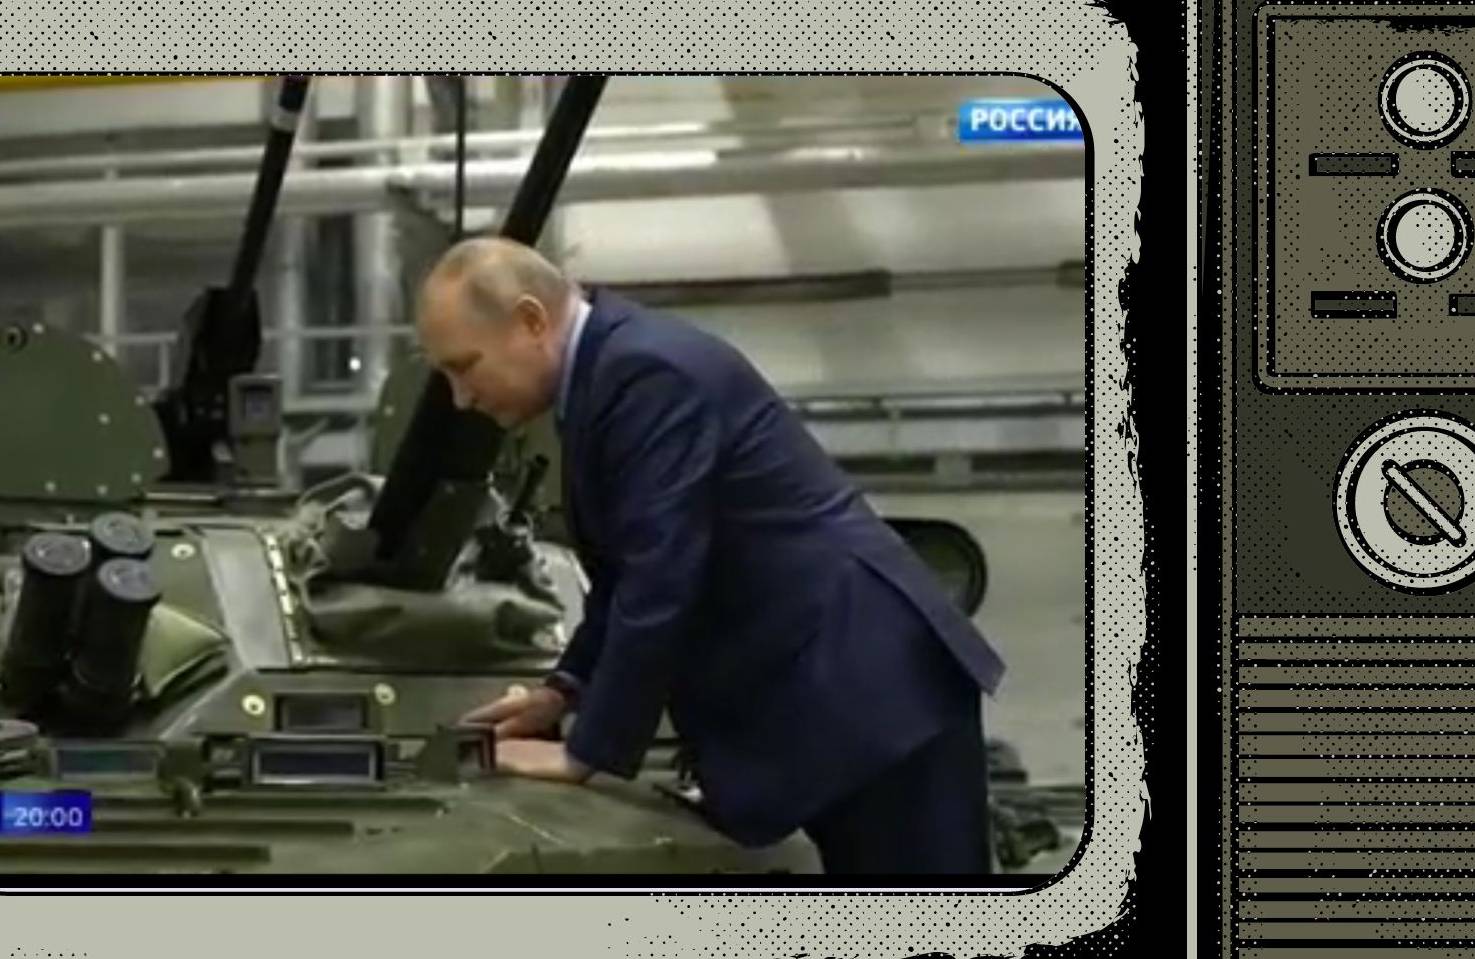 Grafika: w rysunek telewizora wstawione zdjęcie Putina zaglądającego do czołgu